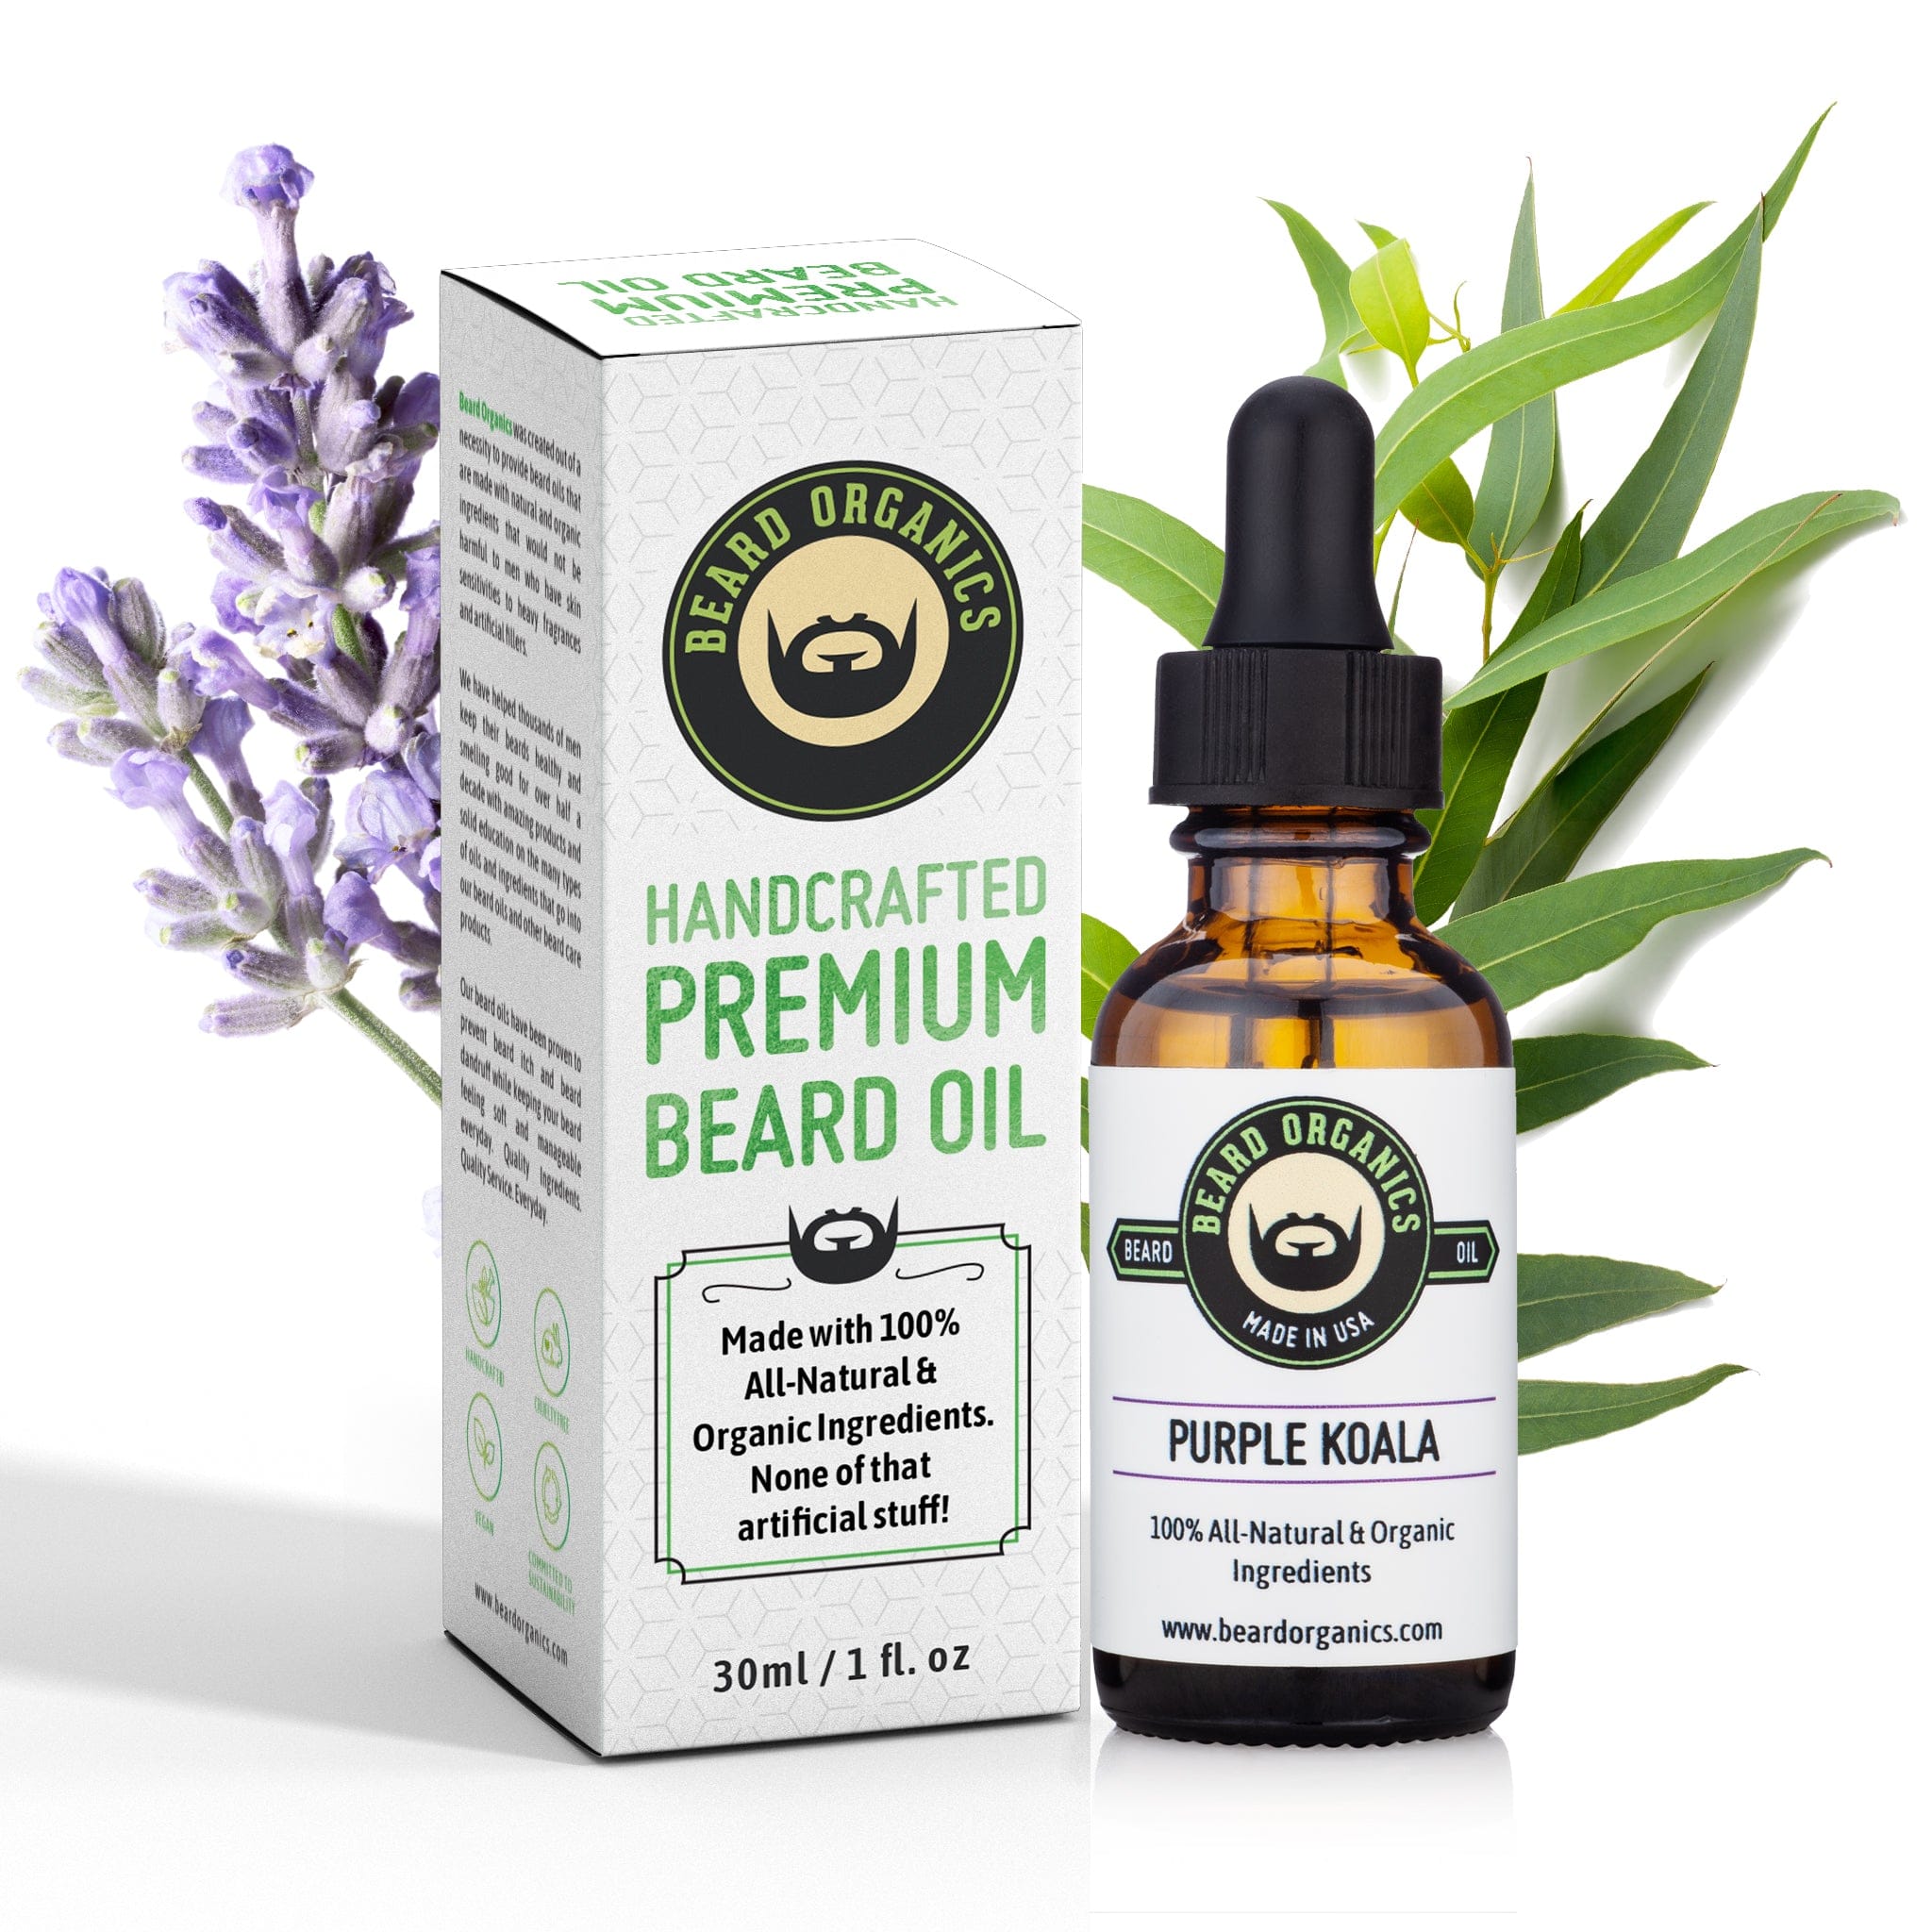 Purple Koala Beard Oil by Beard Organics